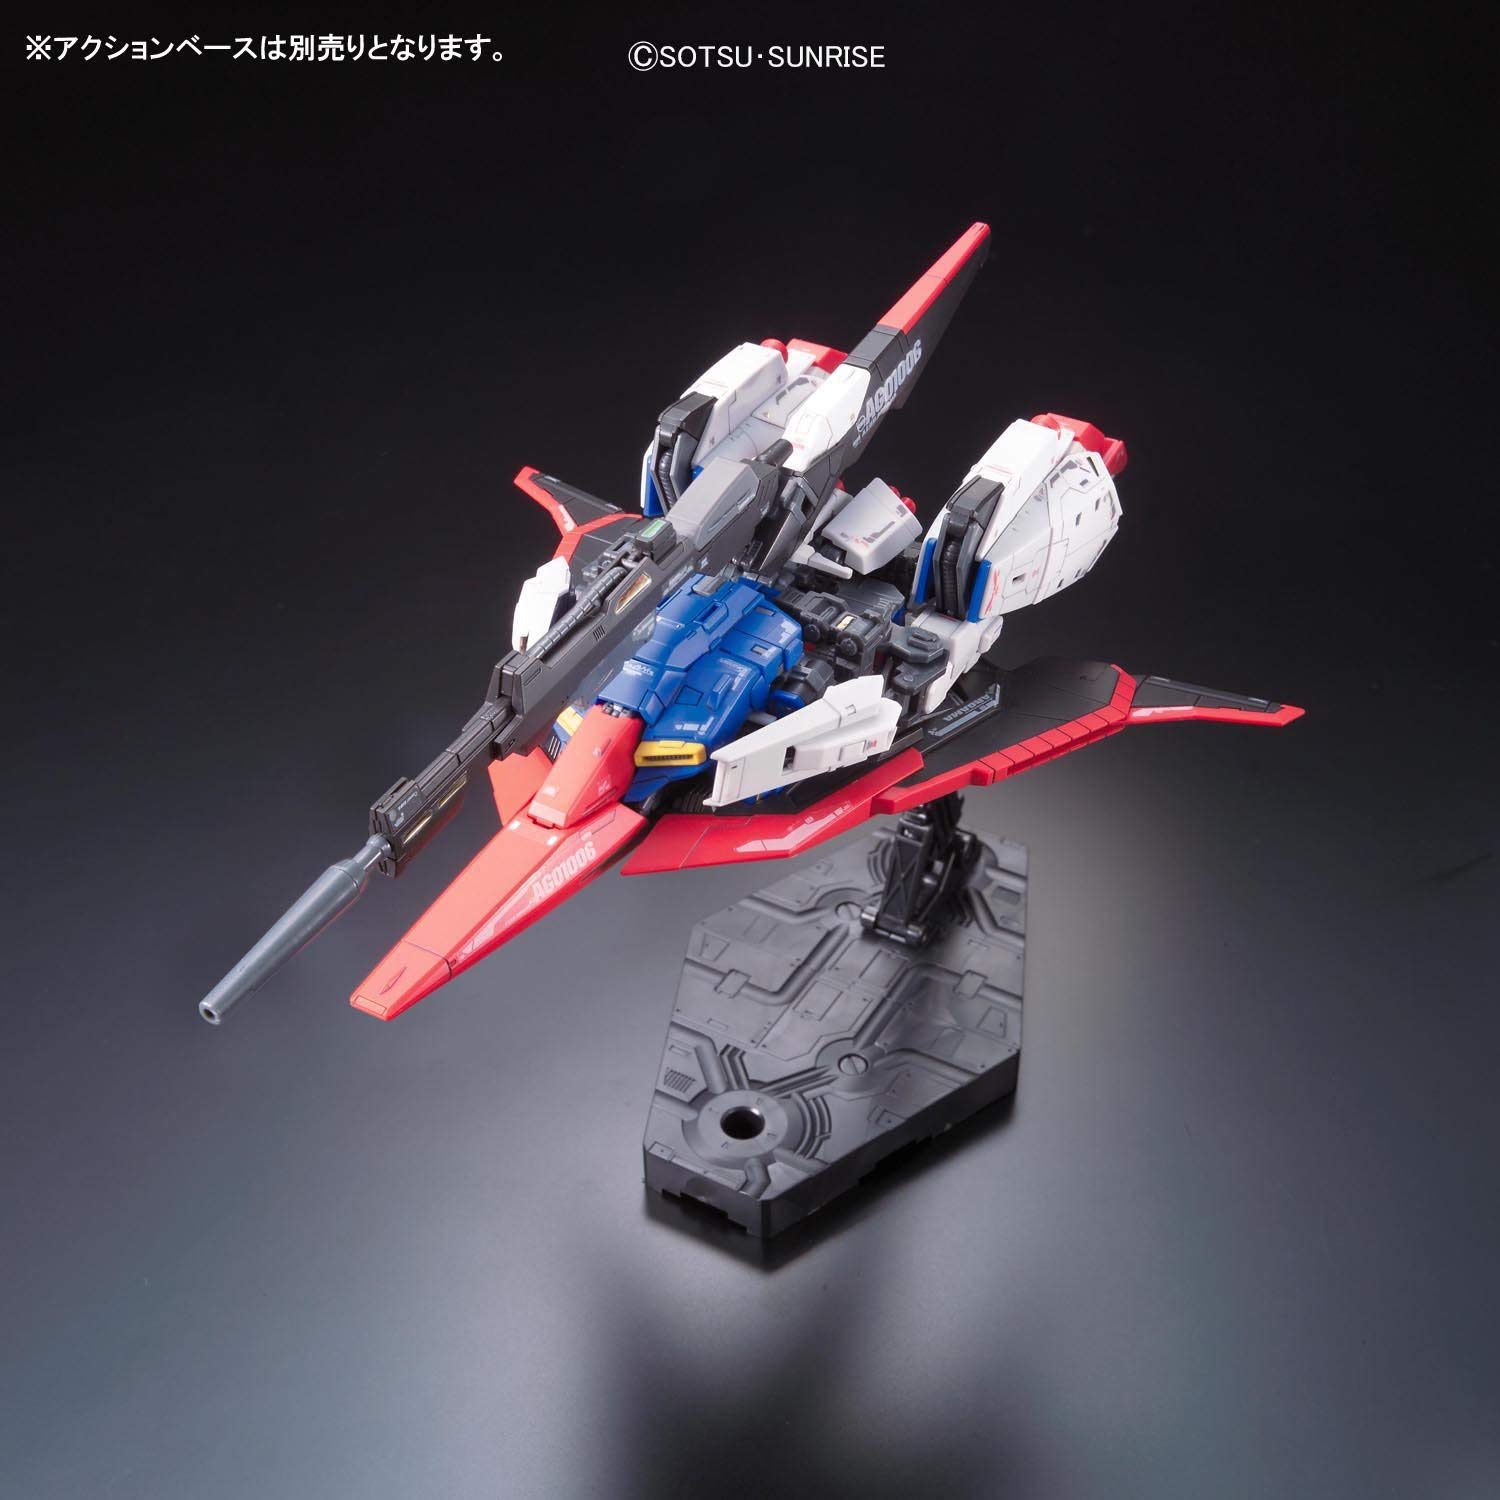 Gundam 1/144 RG #10 Zeta Gundam MSZ-006 Z Gundam Model Kit